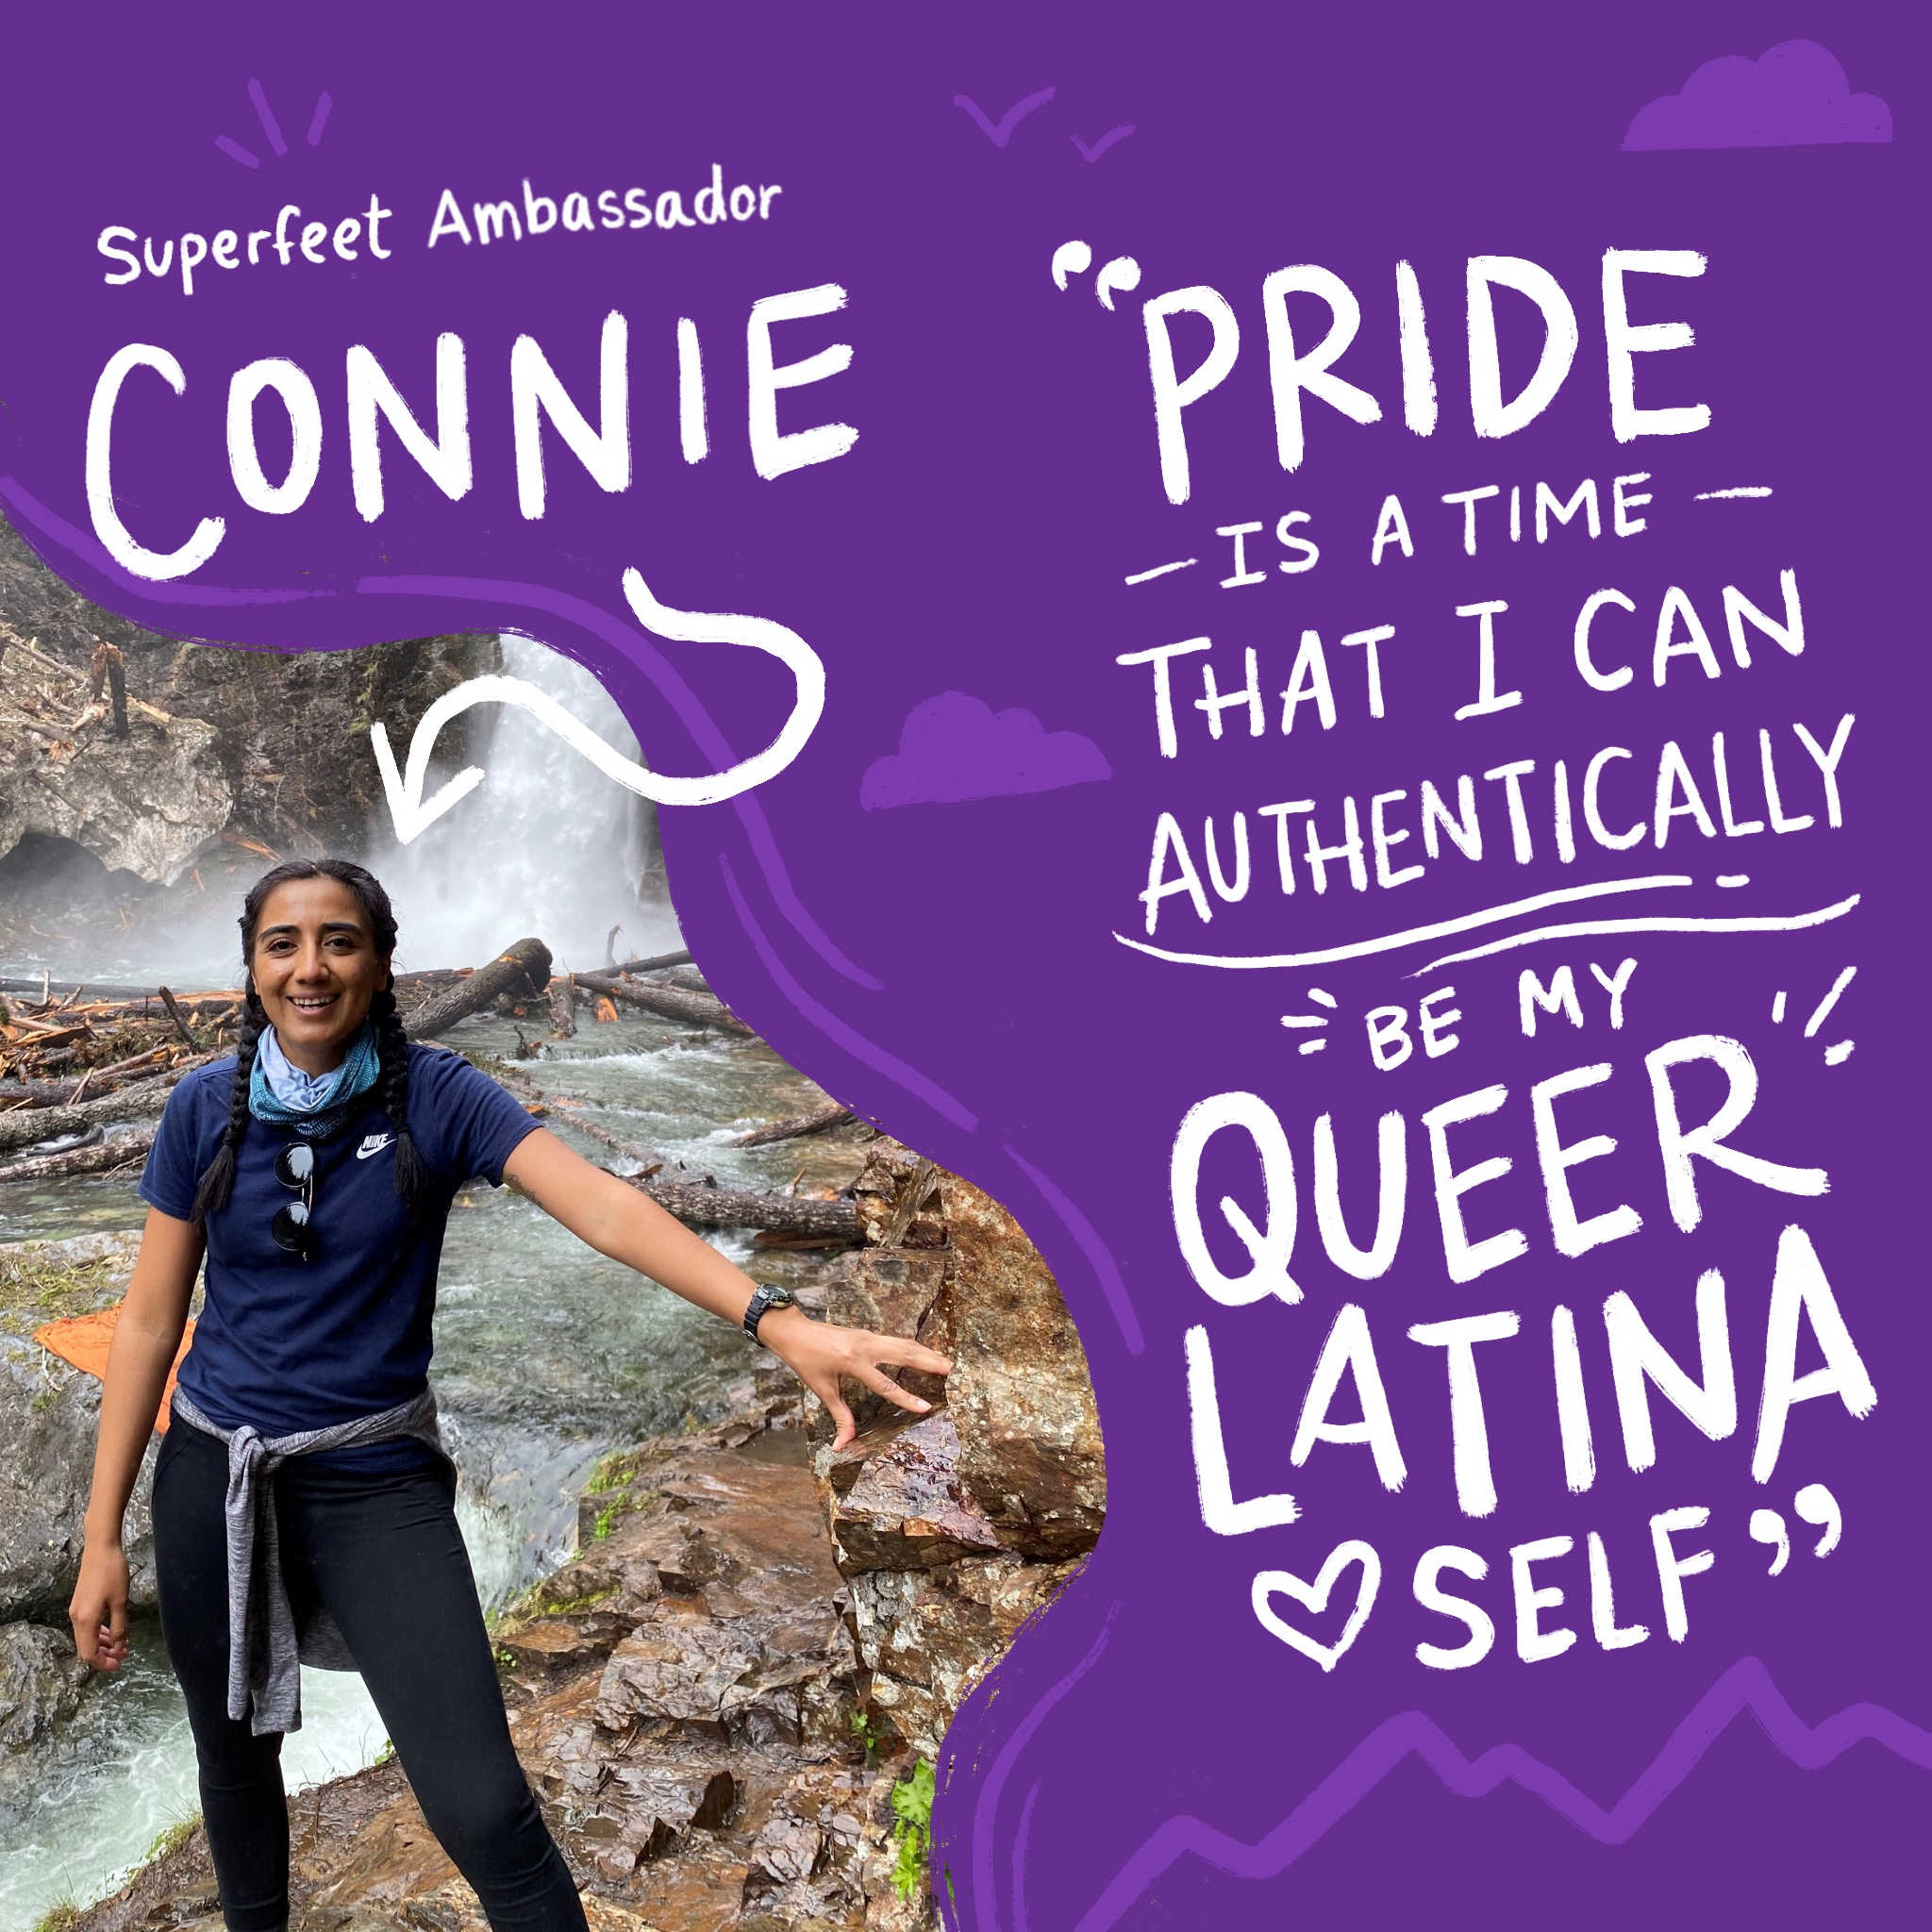 Meet Superfeet Ambassador Connie